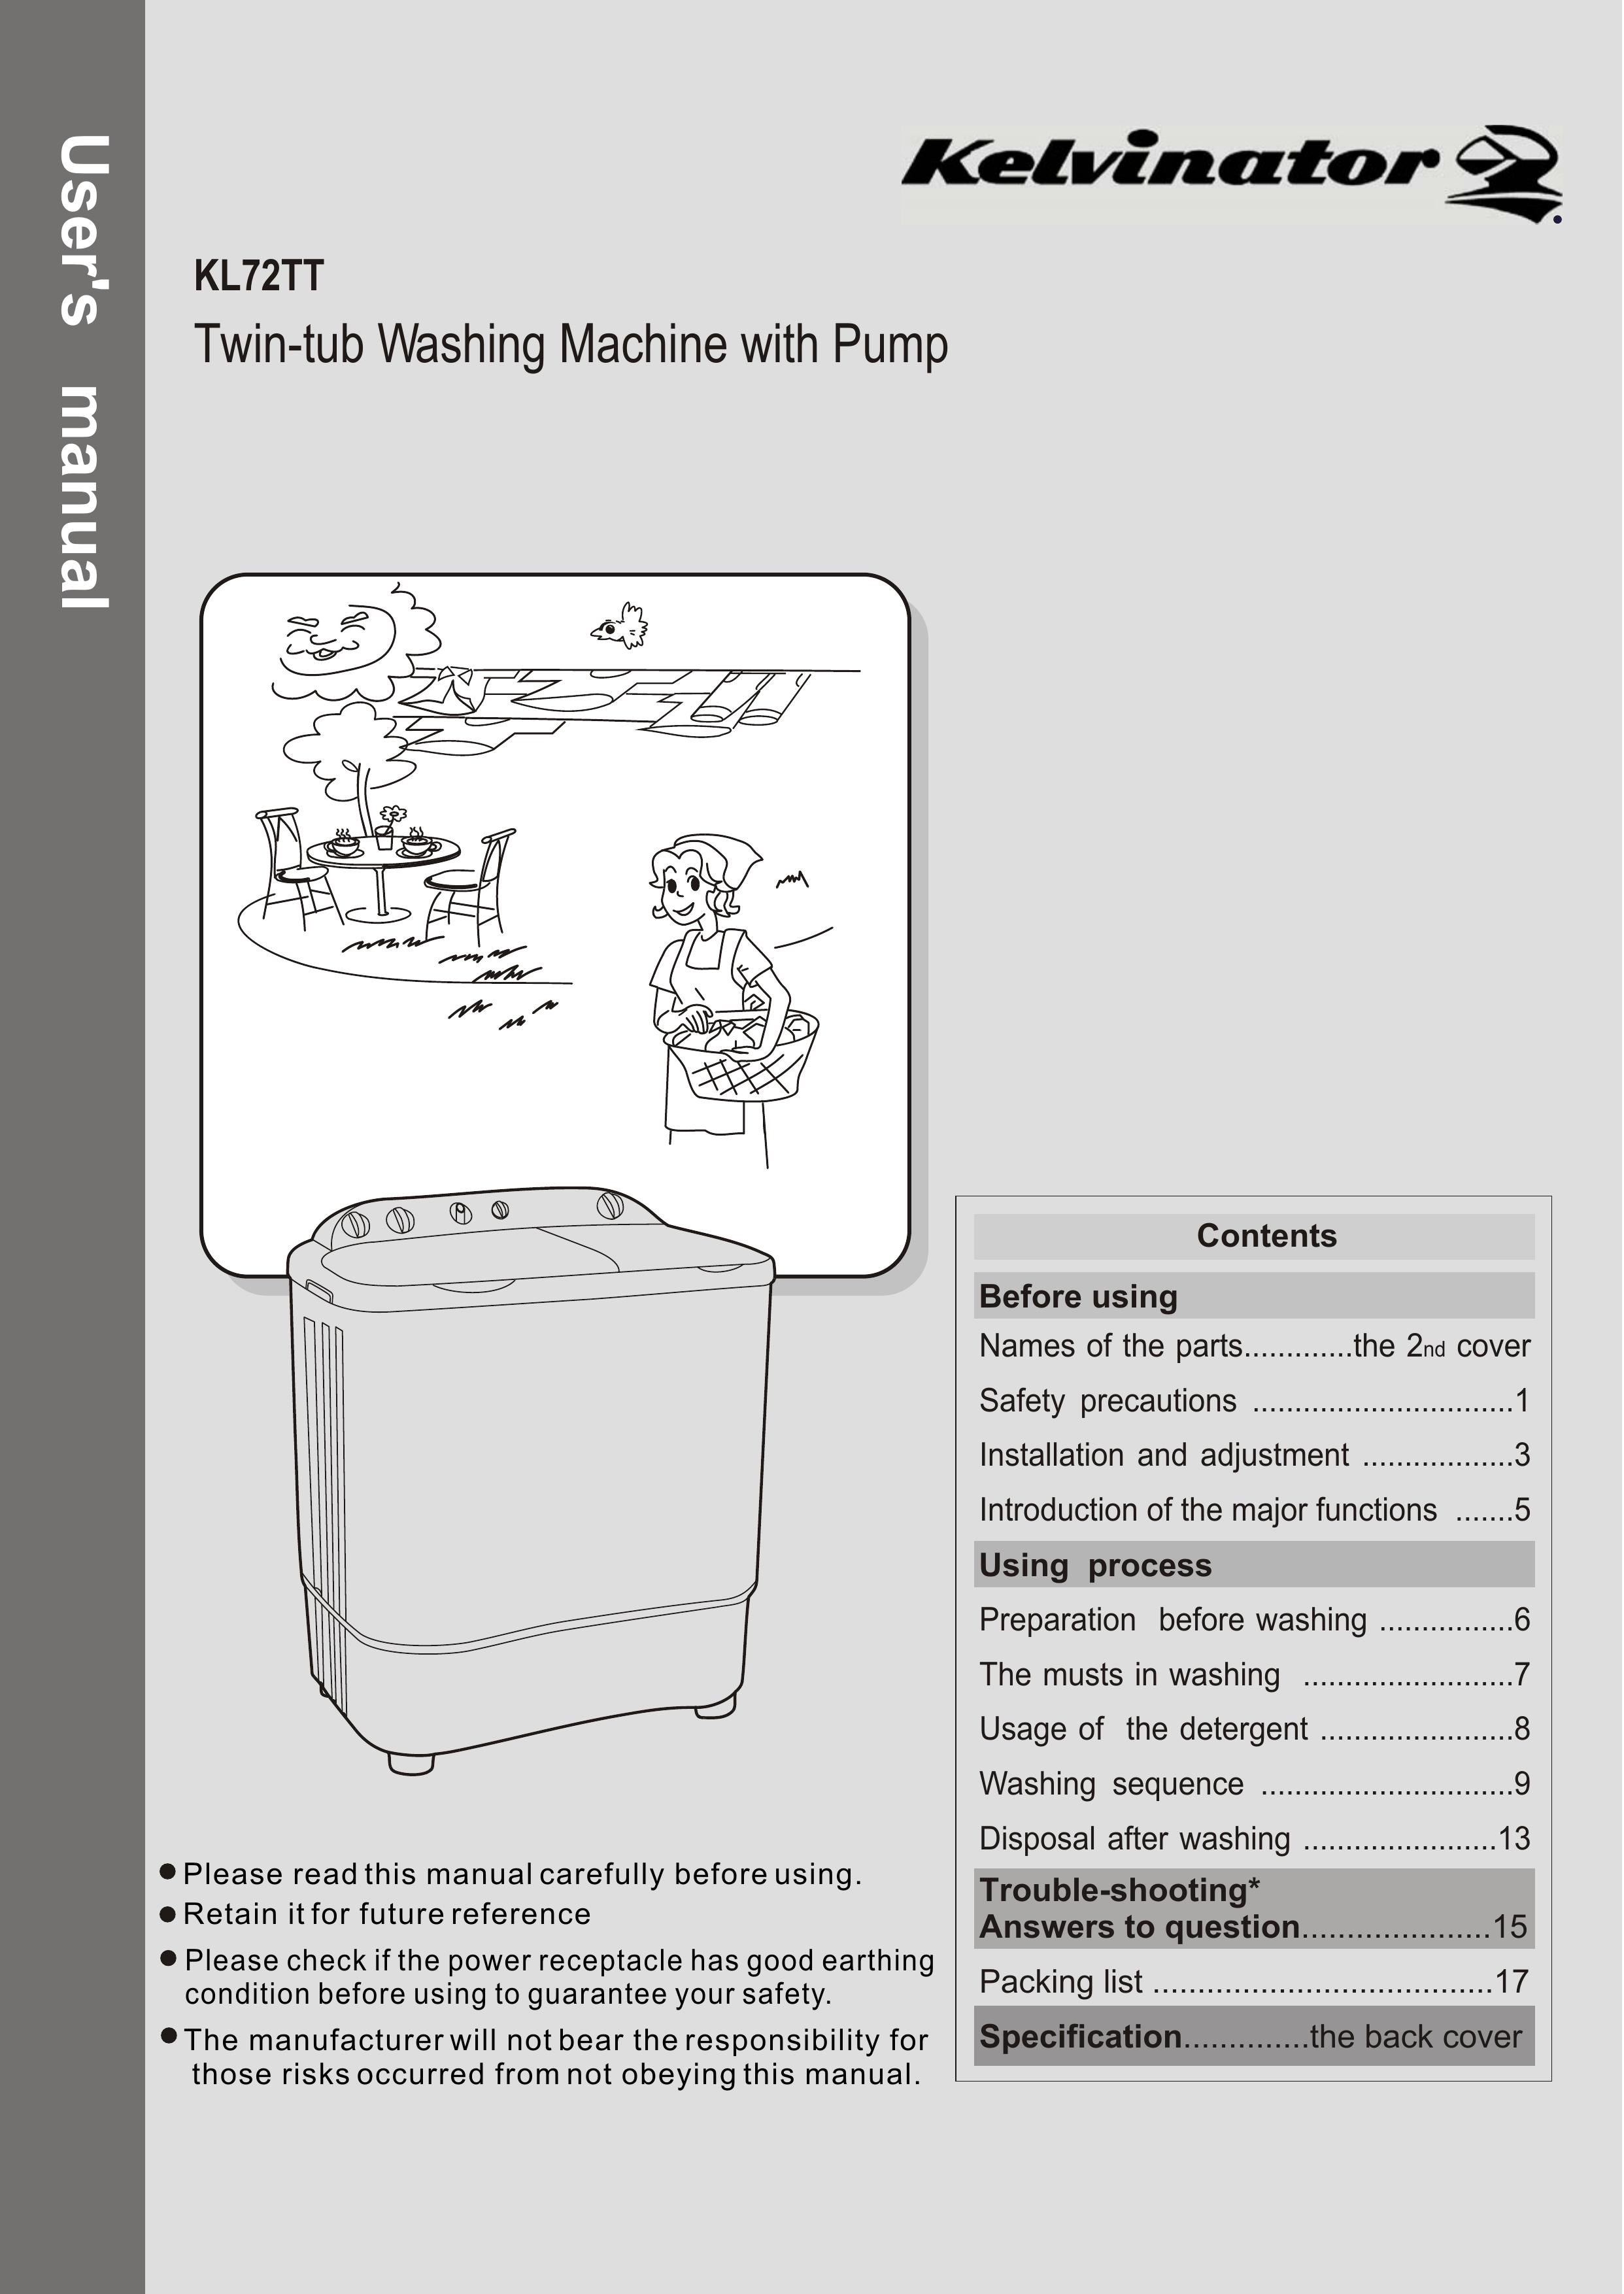 Kelvinator KL72TT Washer/Dryer User Manual